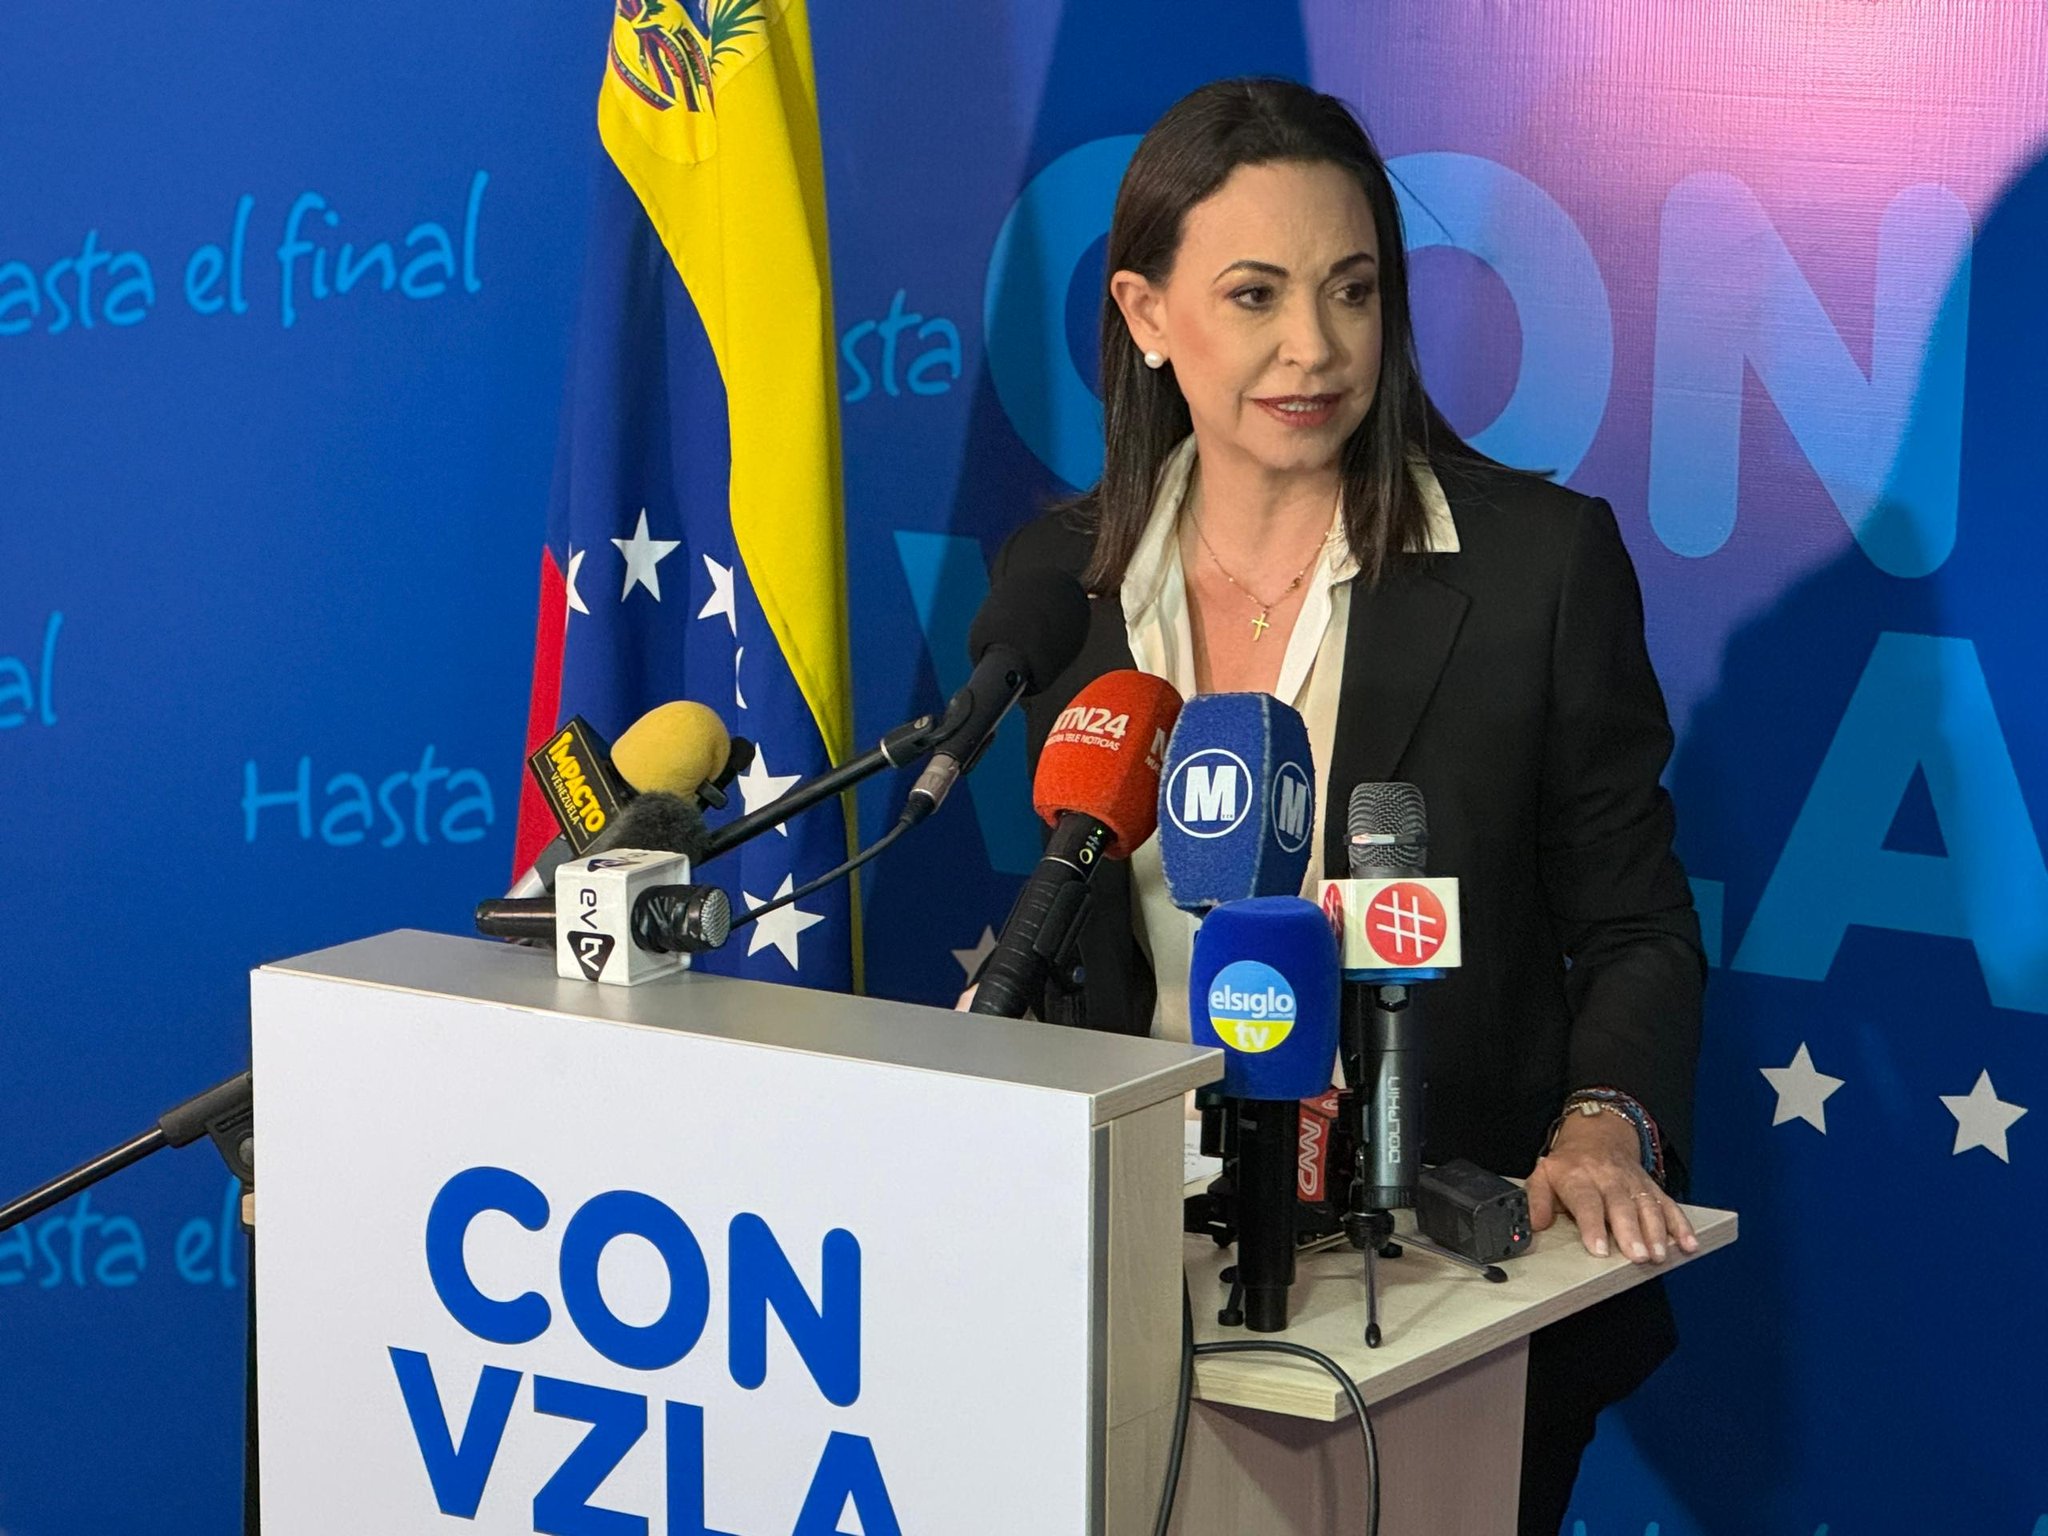 Vente Venezuela presentó el documento que entregó María Corina Machado al TSJ